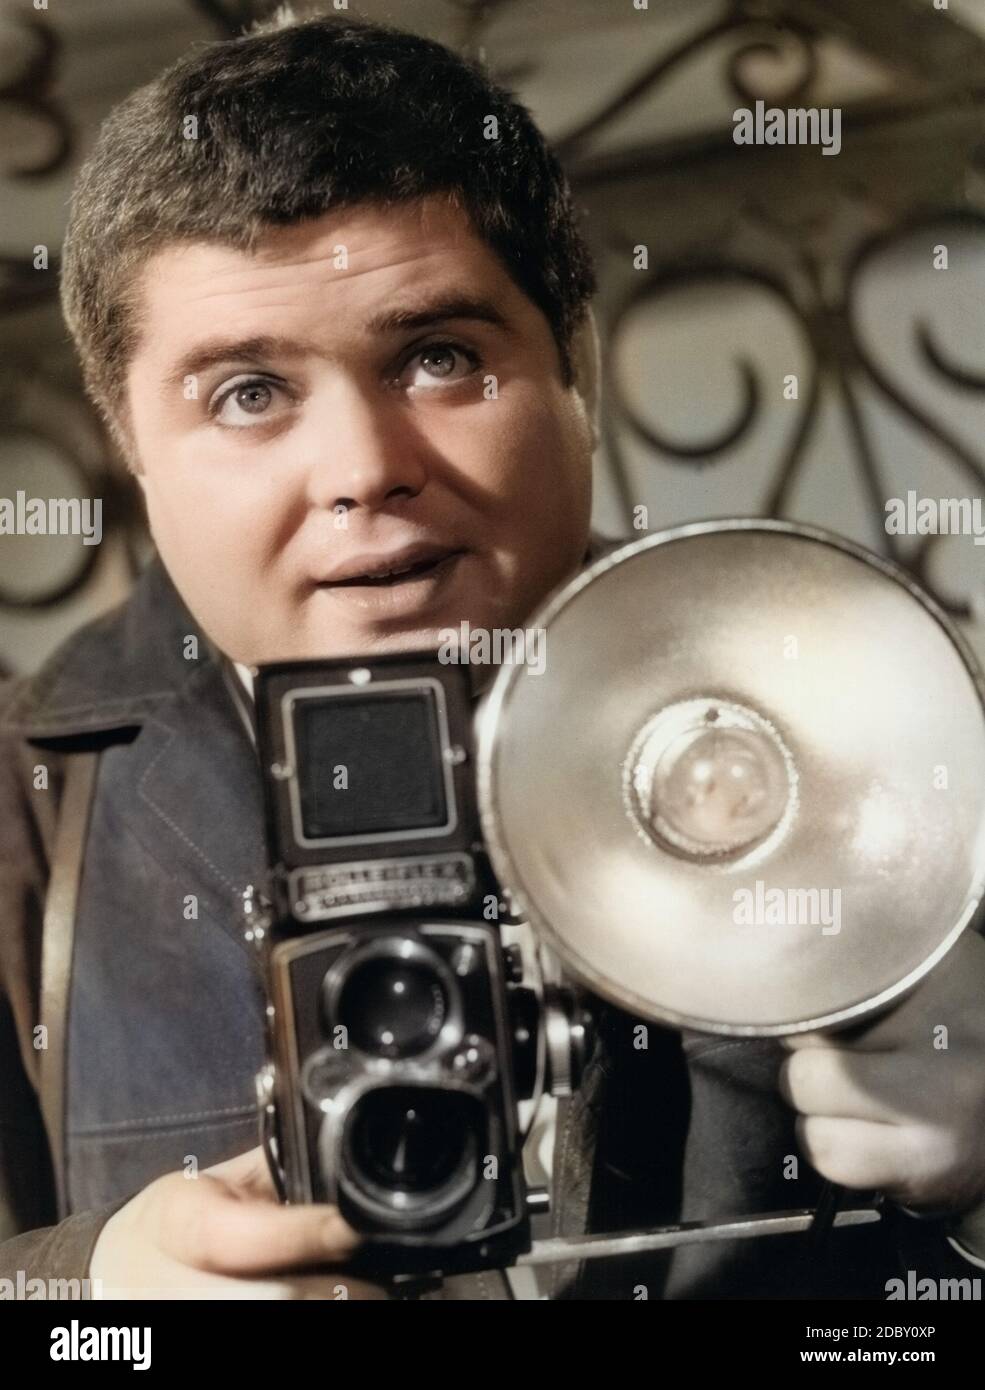 Klaus Dahlen, deutscher Schauspieler, im Film "Willy der Privatdetektiv', Deutschland 1960. Attore tedesco Klaus Dahlen nel suo film 'Willy der Privatdetektiv', Germania 1960. Foto Stock